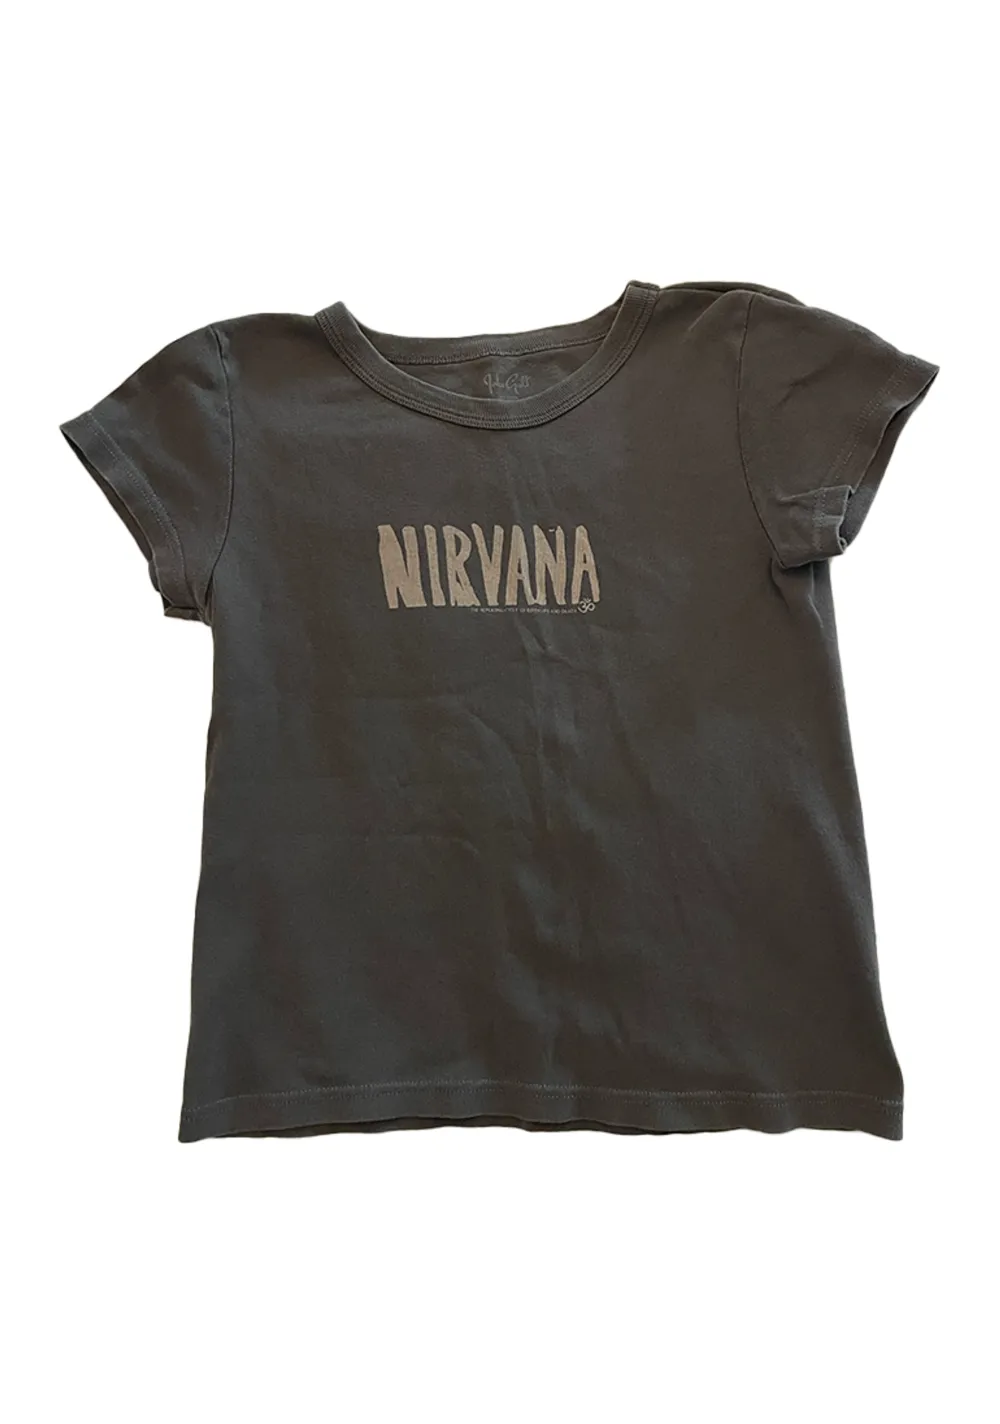 Grå nirvana tröja från Brandy Melville, bra kvalitet, säljer pga ingen användning . Skjortor.